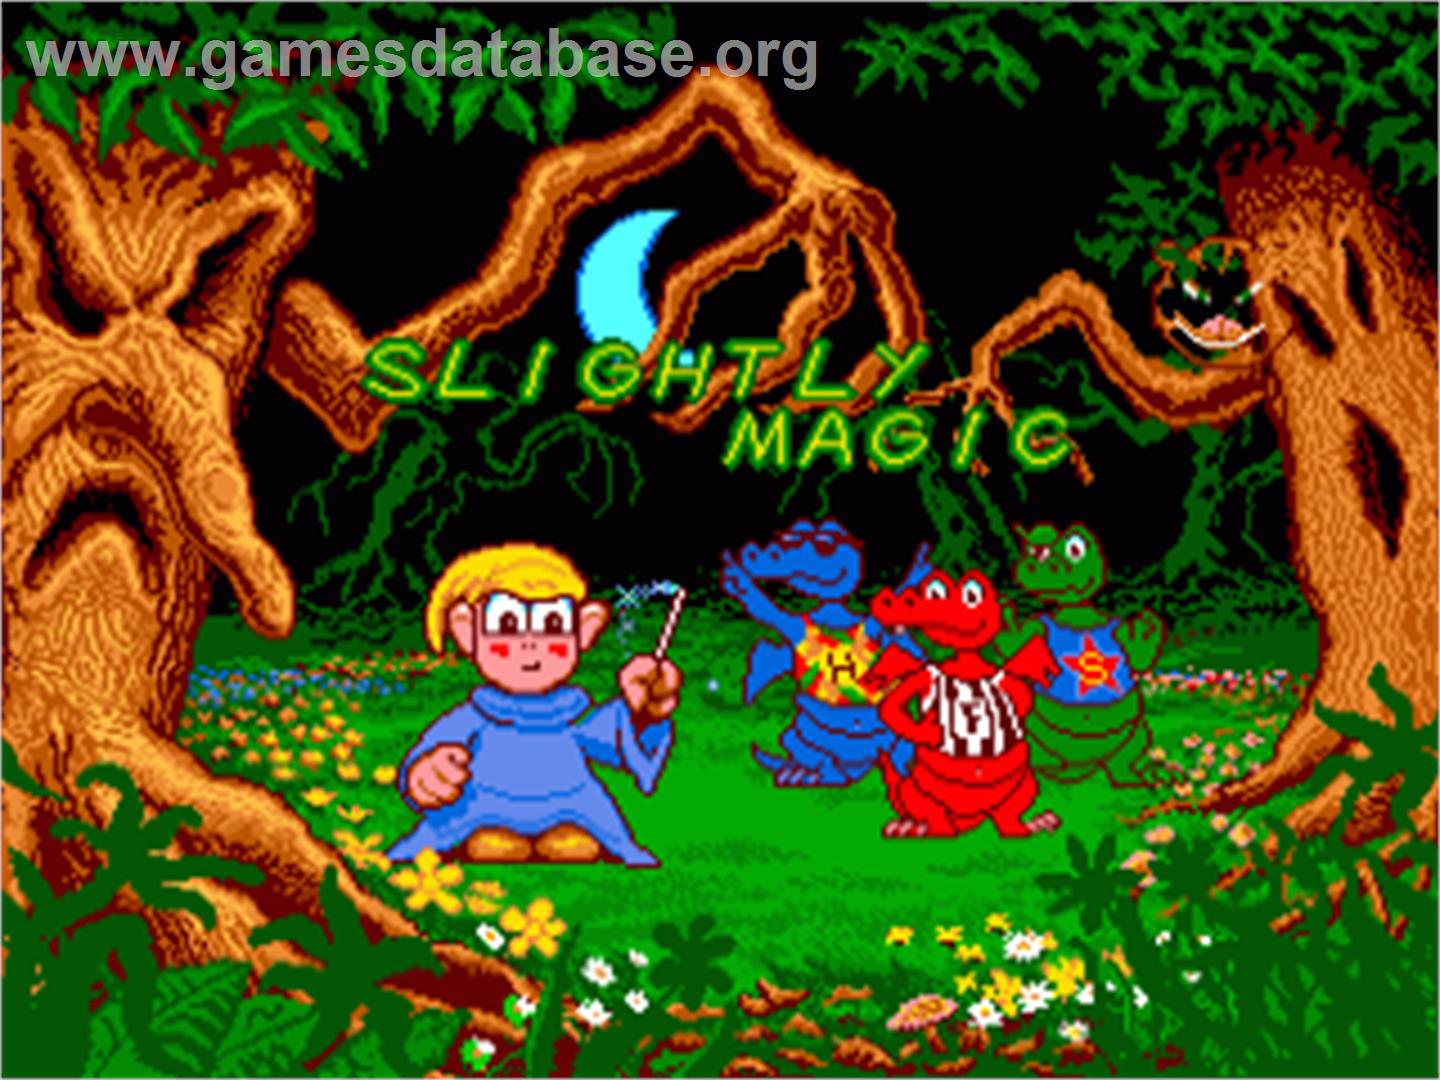 Slightly Magic - Commodore Amiga - Artwork - Title Screen